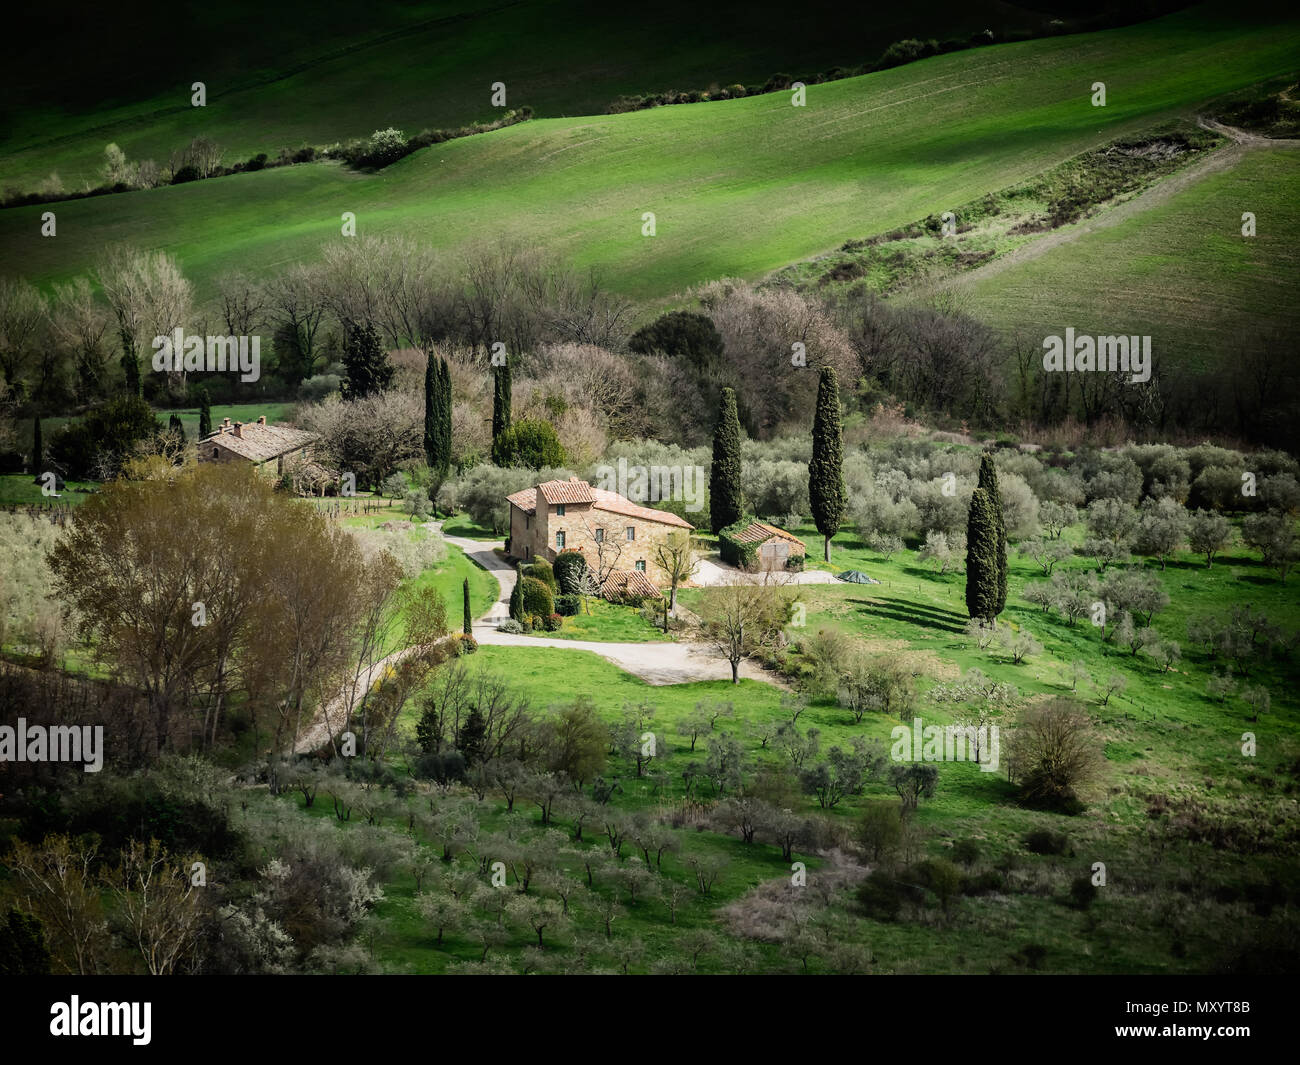 Vue panoramique sur les paysages de l'enceinte de Montepulciano, Italie Tuascany Banque D'Images